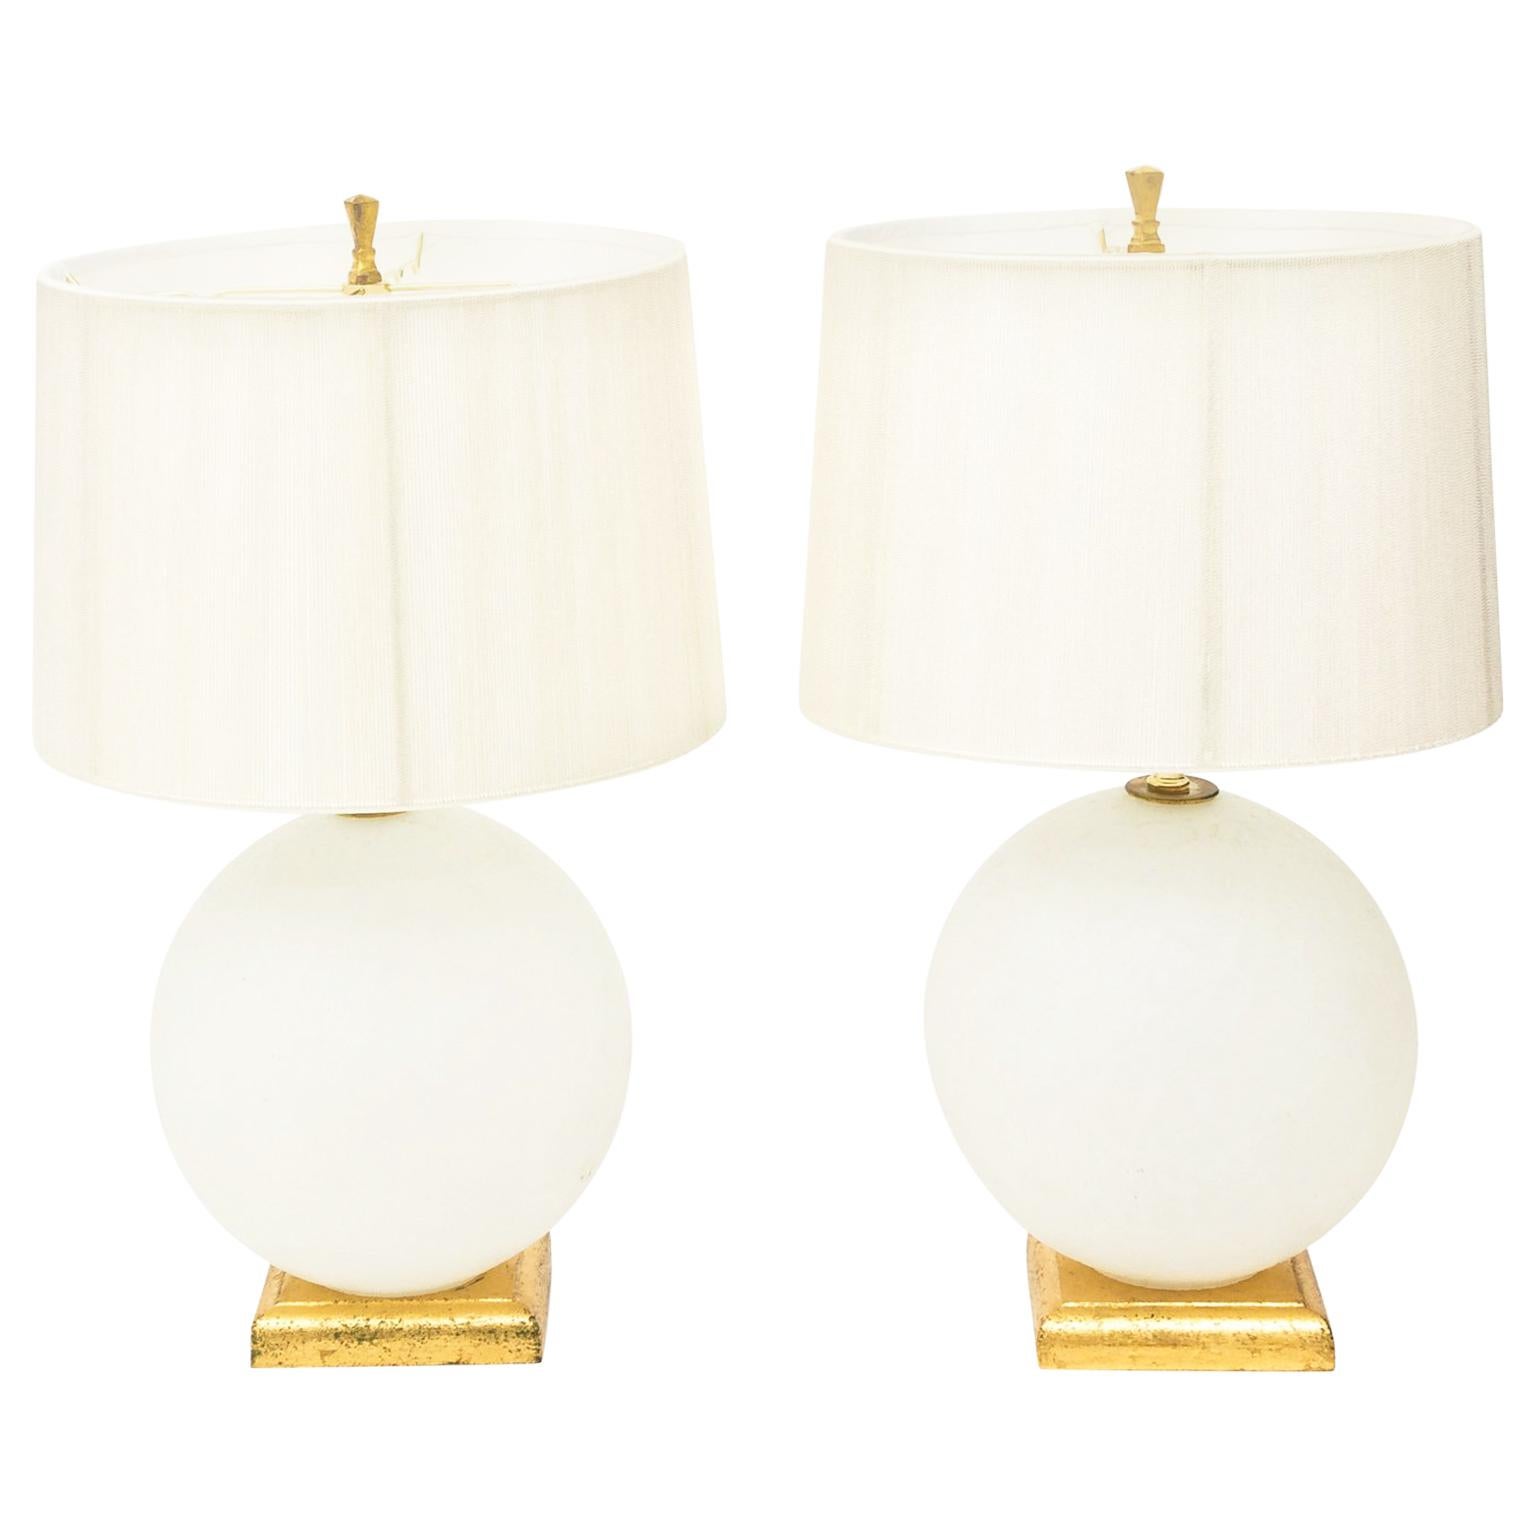 Pair of Mid-Century Modern Murano Glass Globe Lamps